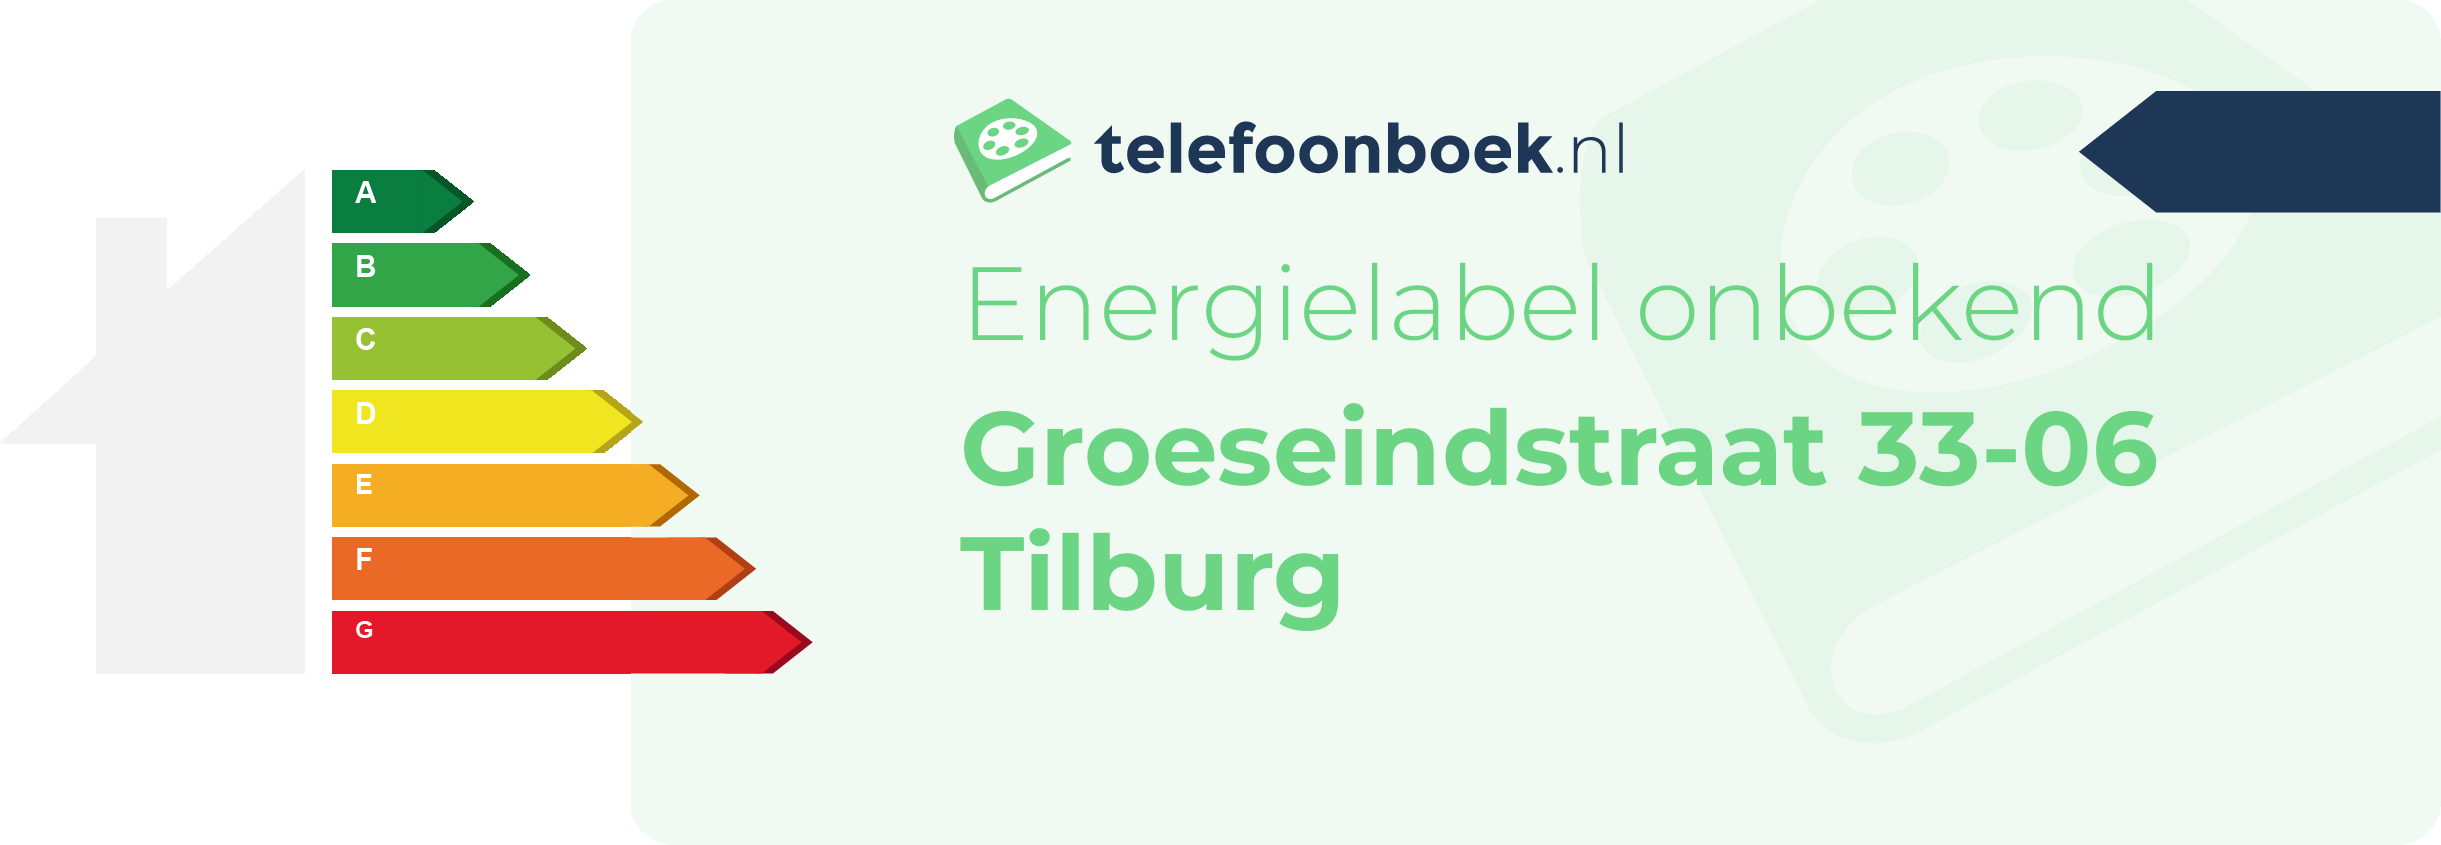 Energielabel Groeseindstraat 33-06 Tilburg